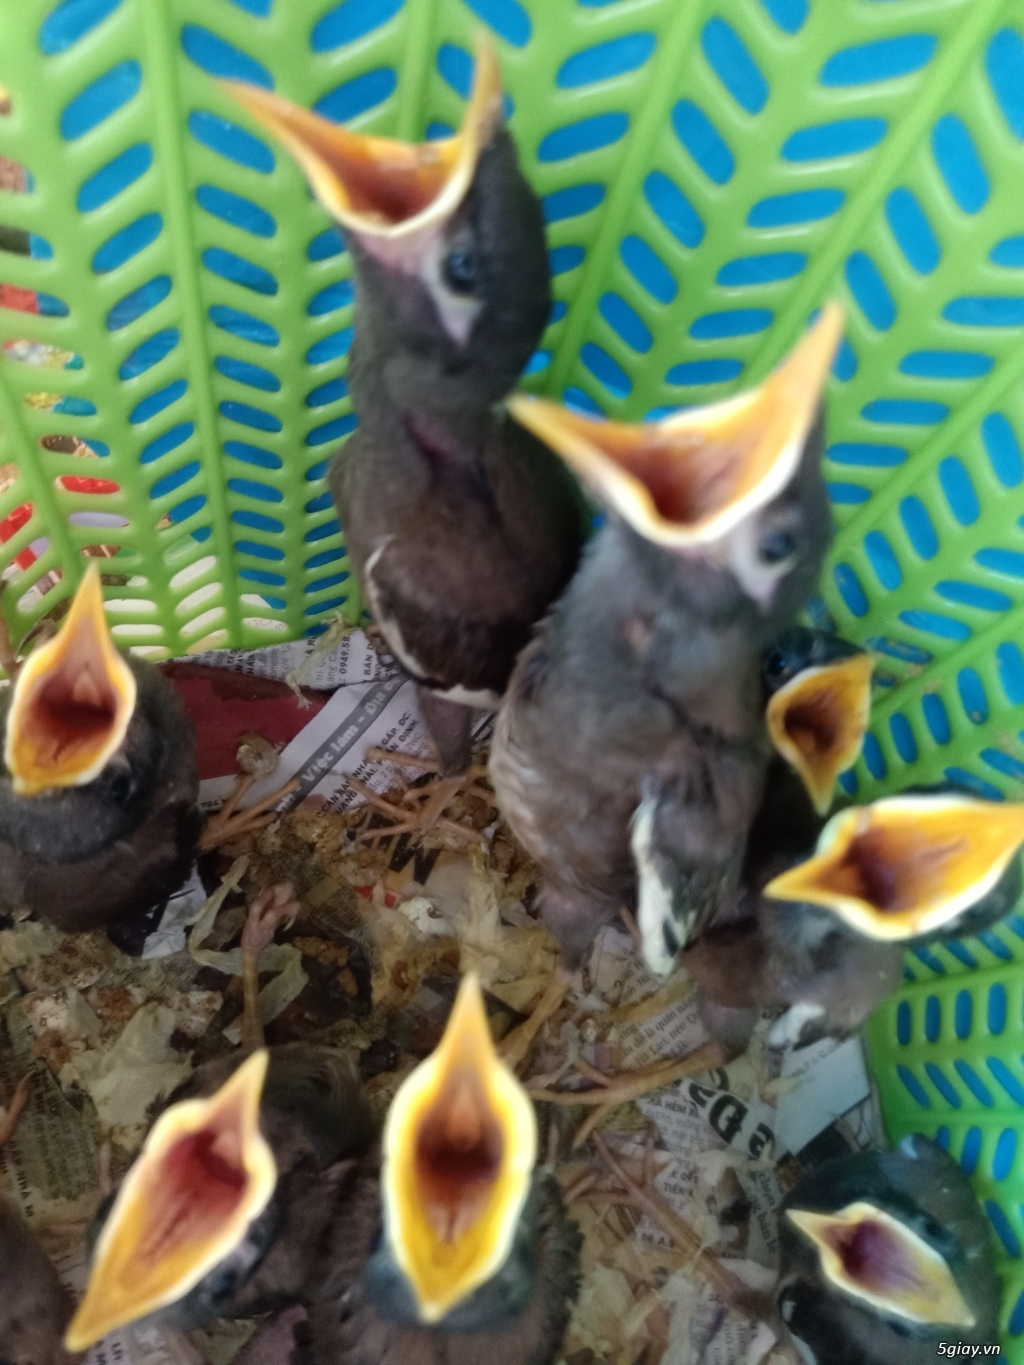 Chùm ảnh: Sự đa dạng của các loài chim sáo ở Việt Nam - Redsvn.net